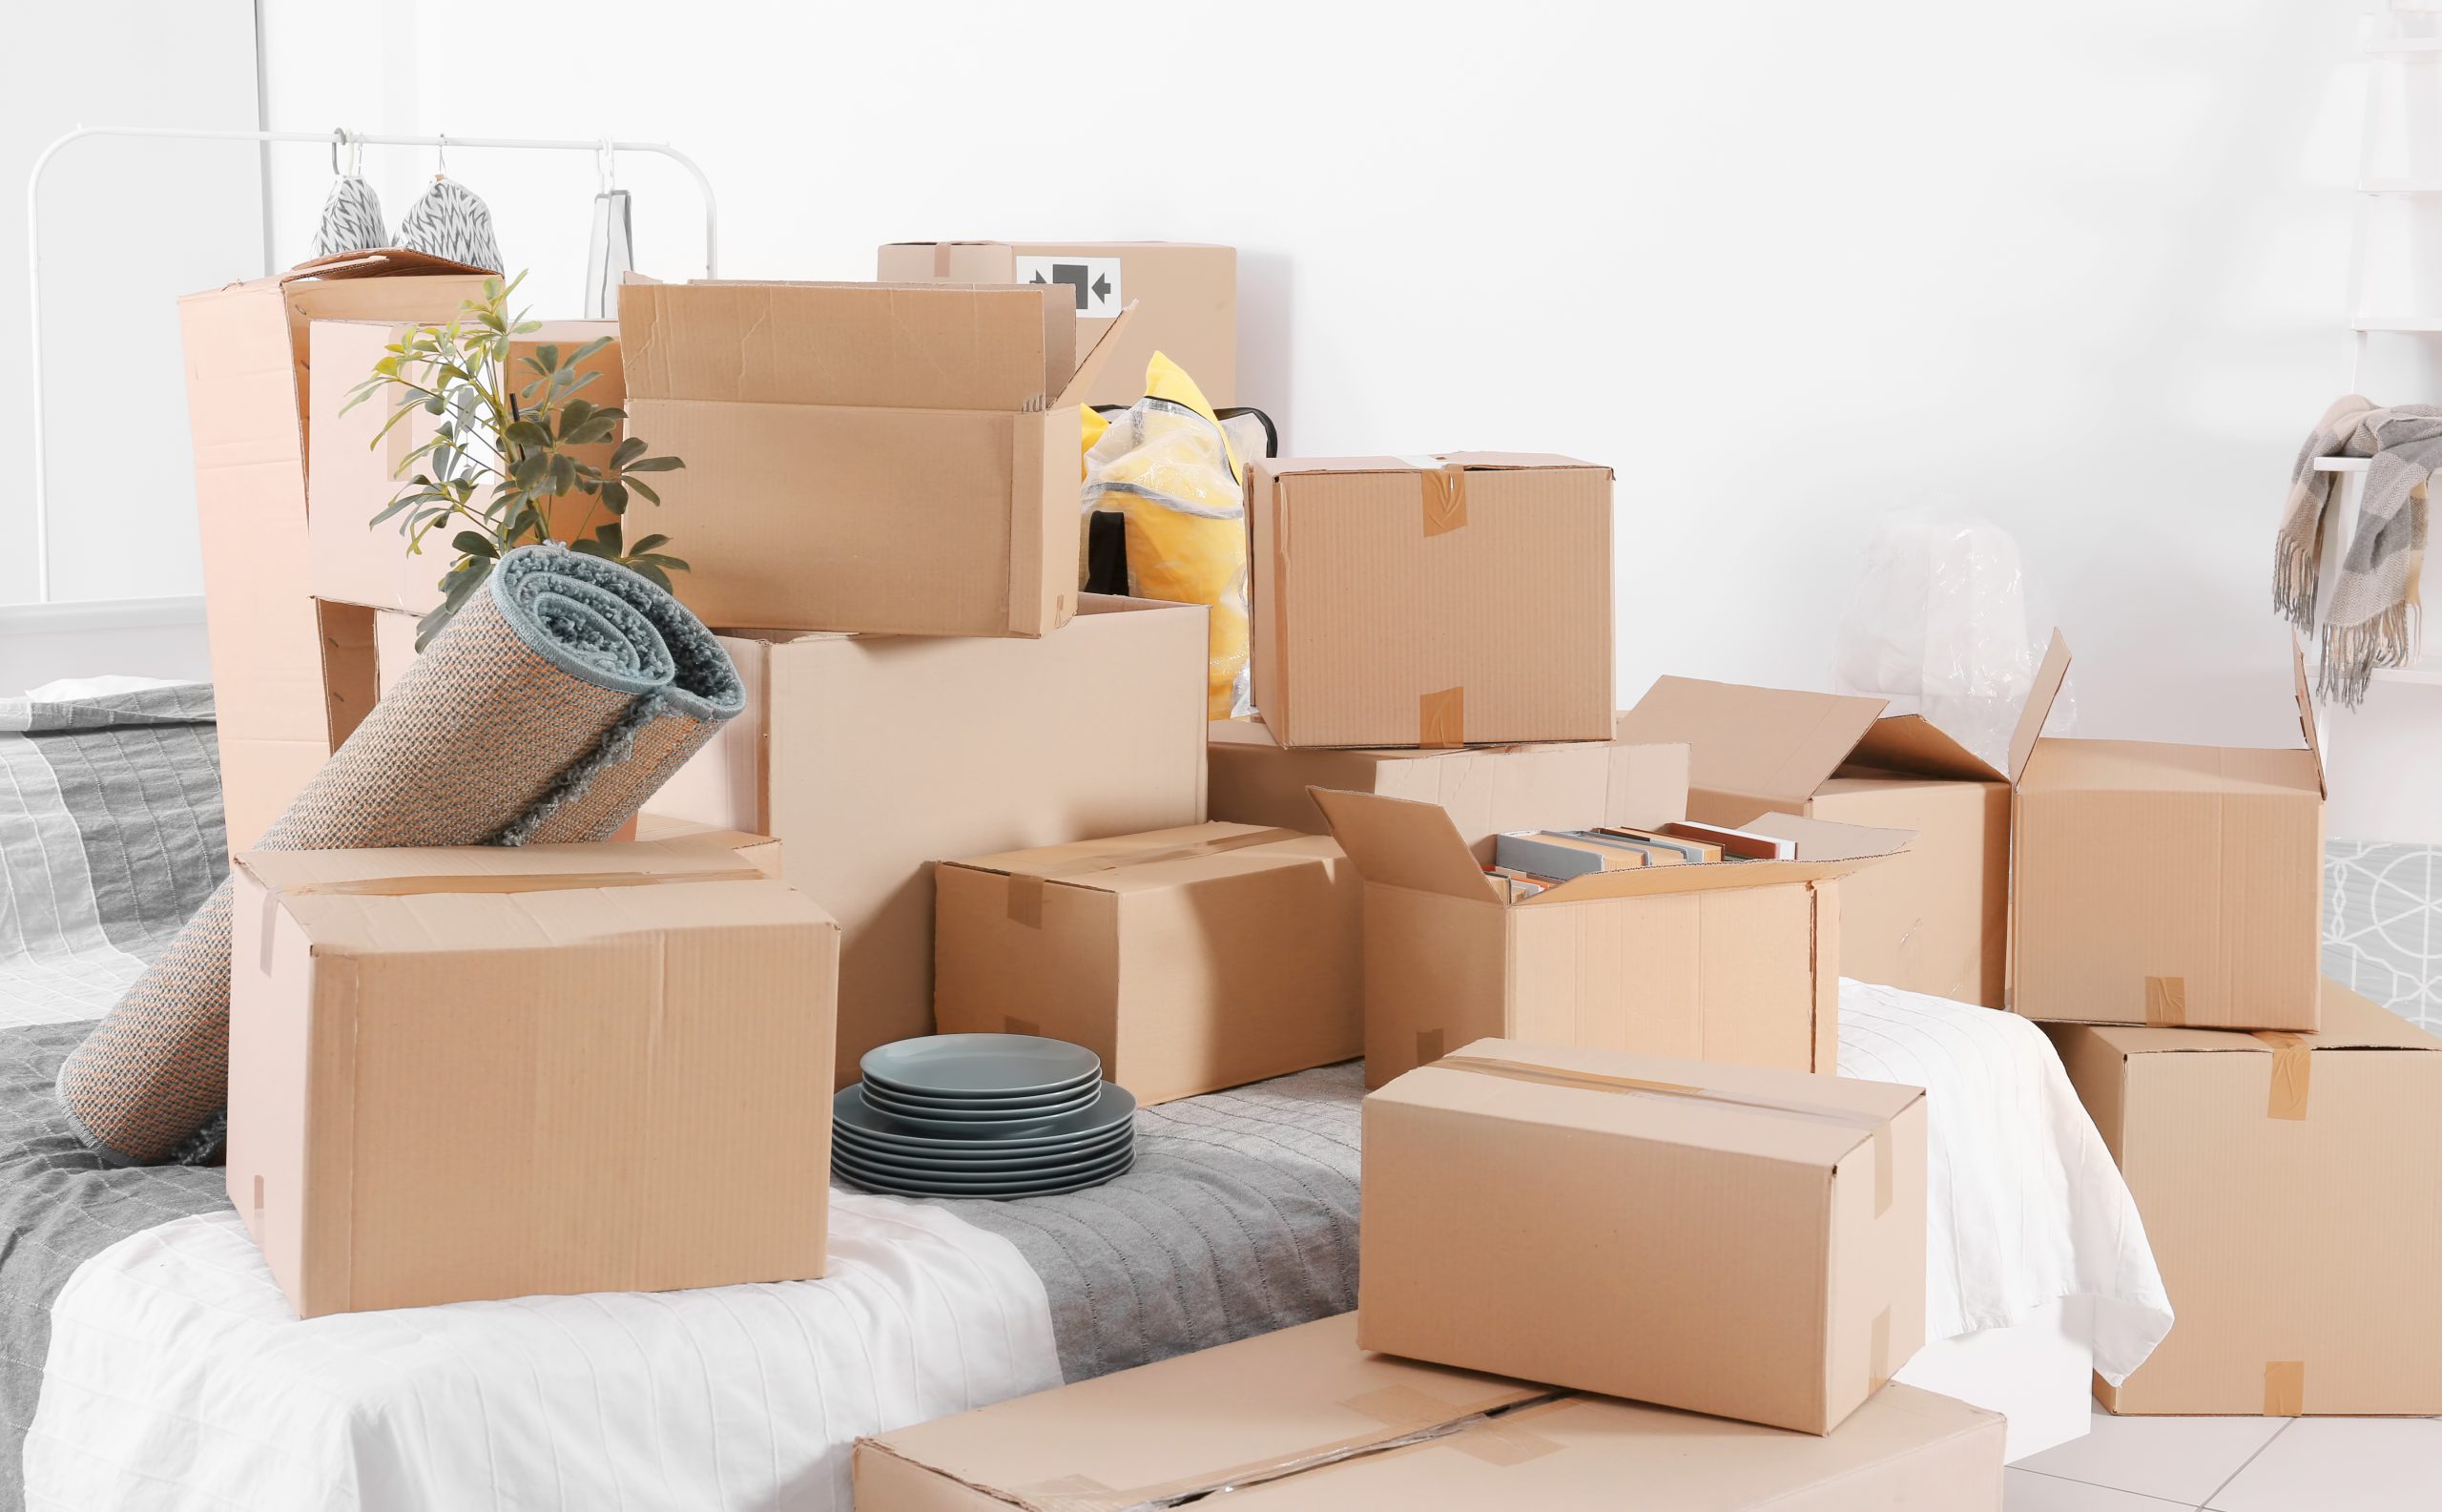 Package items. Упаковка вещей для переезда. Упаковка мебели. Коробки для упаковки вещей. Упакованные вещи в коробки.